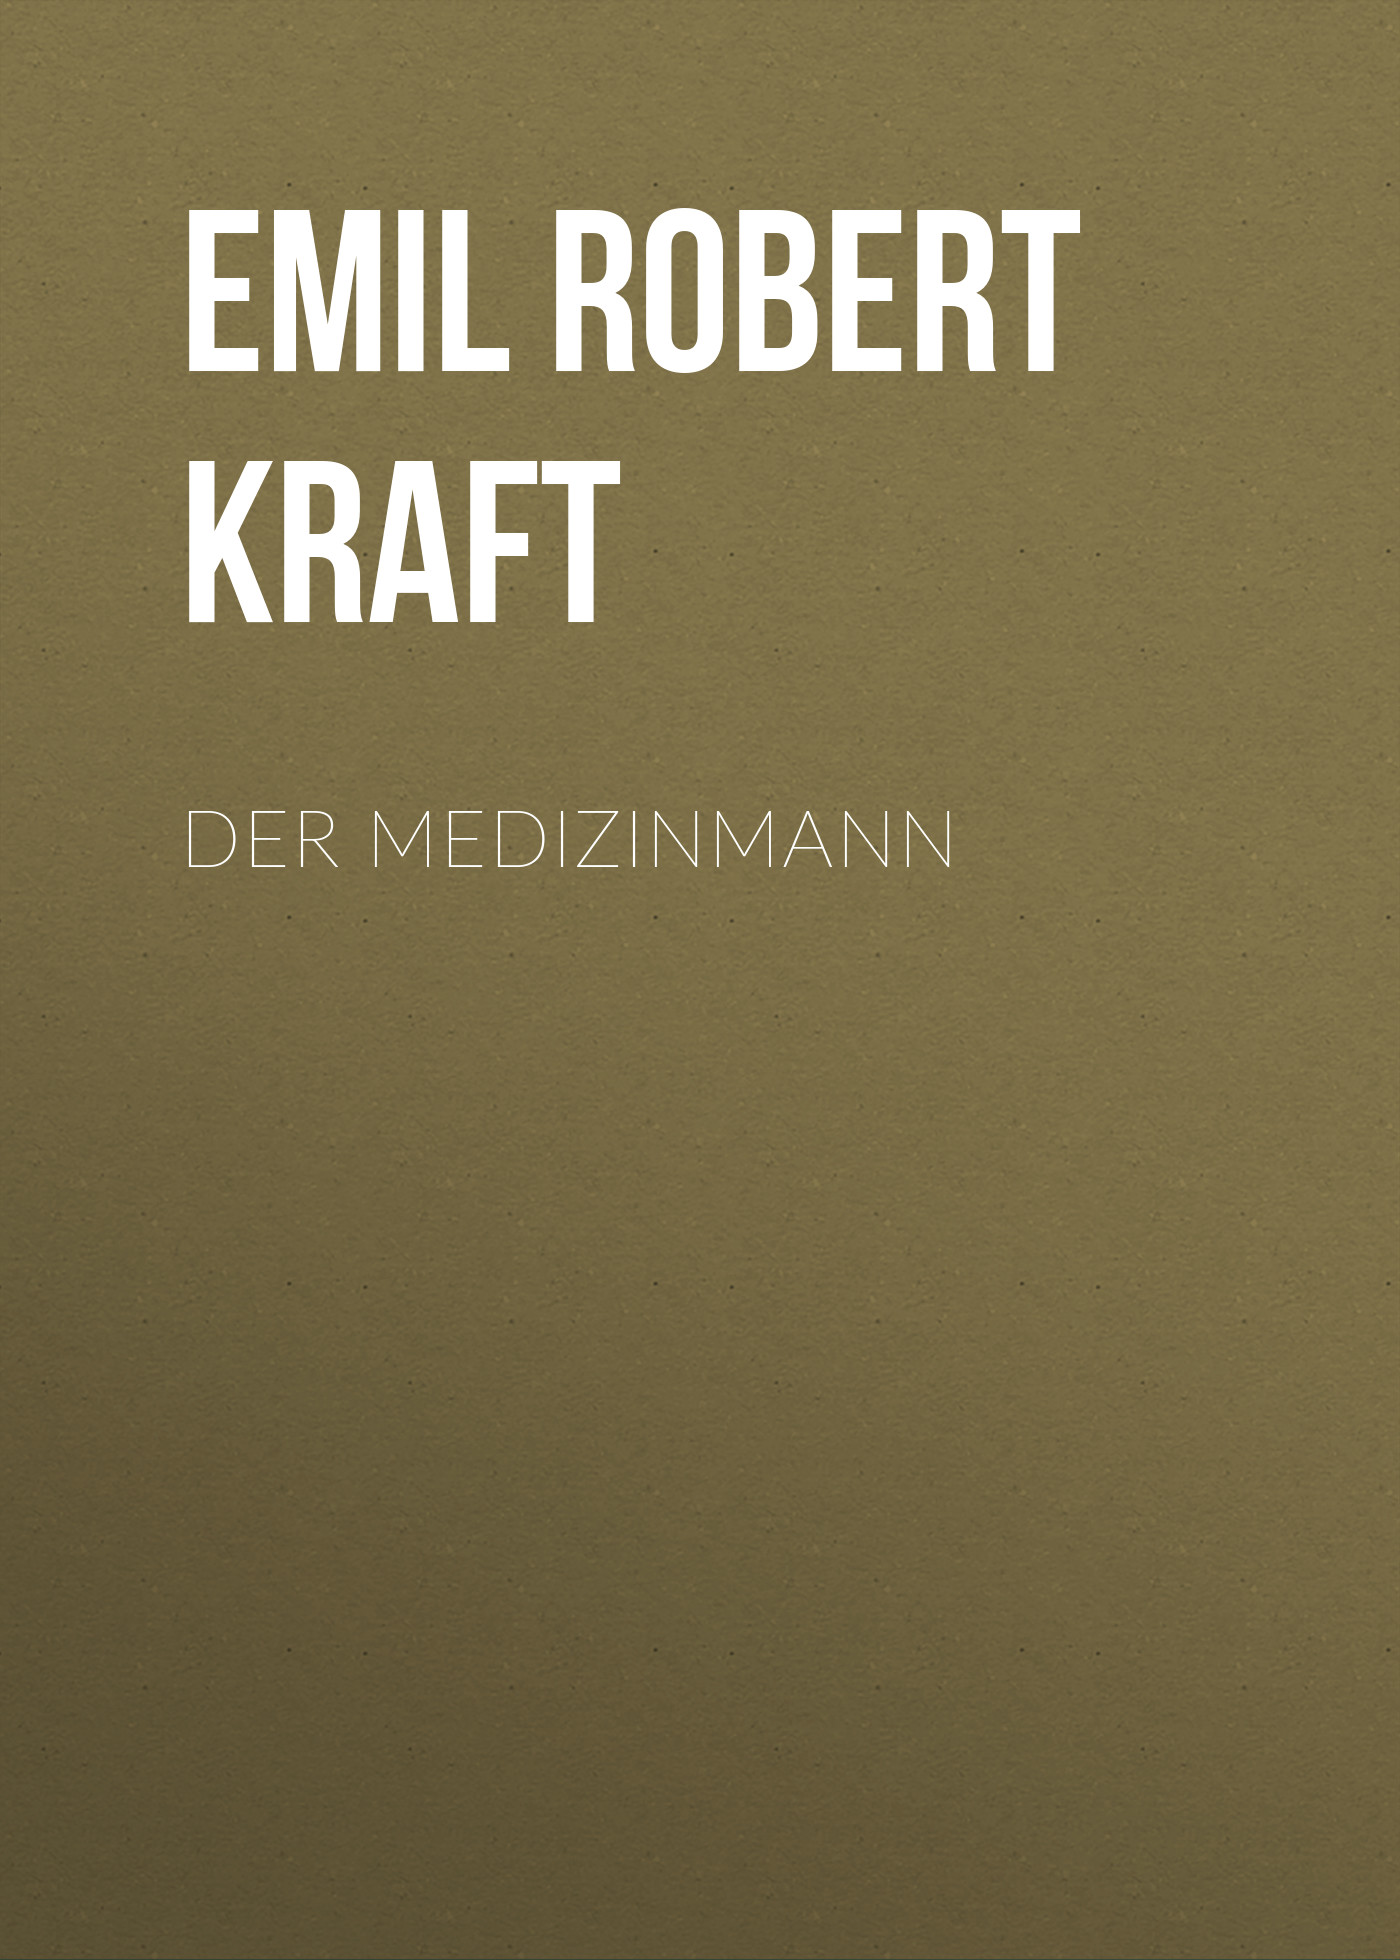 Книга Der Medizinmann из серии , созданная Emil Robert Kraft, может относится к жанру Зарубежная классика. Стоимость электронной книги Der Medizinmann с идентификатором 48633148 составляет 0 руб.